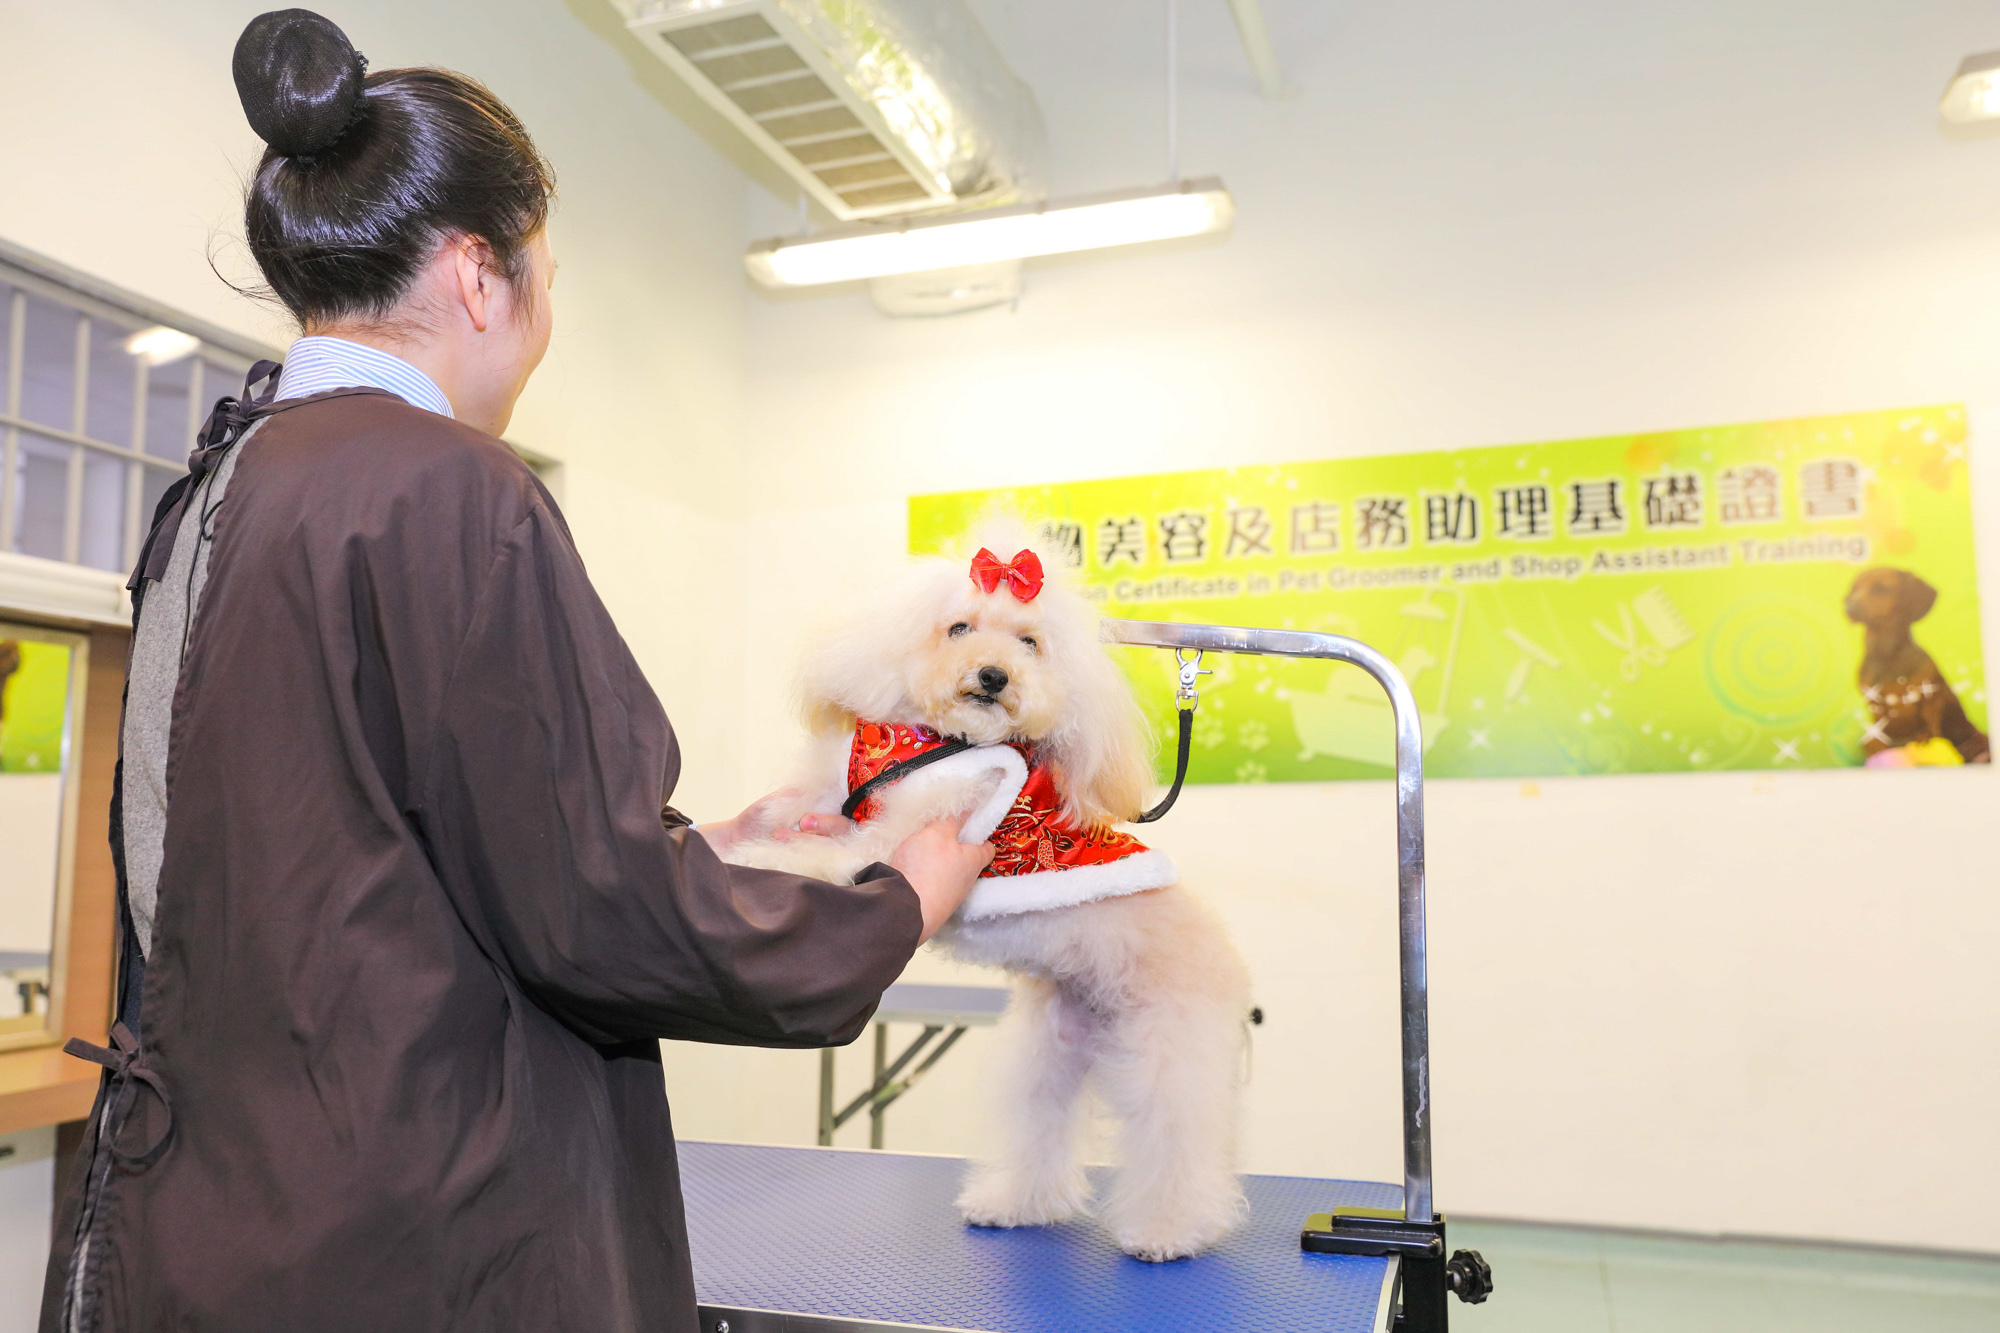 寵物美容及店務助理基礎證書課程有助提高在囚人士的就業能力。